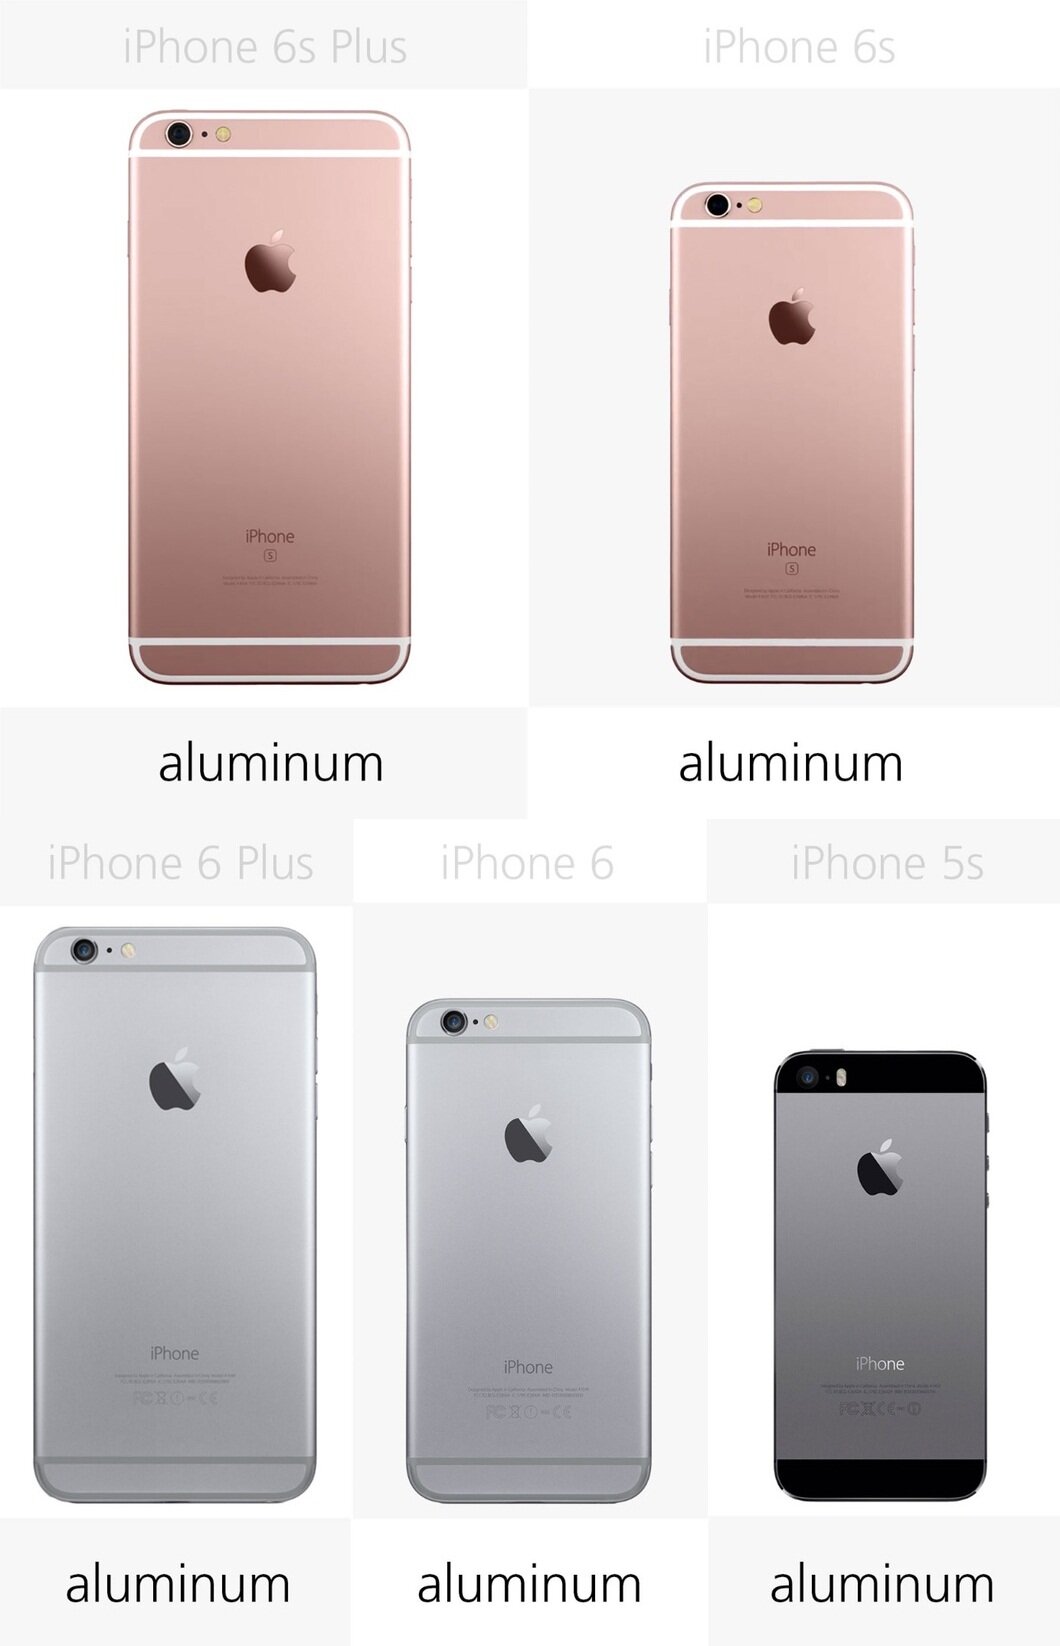 Tất cả 5 mẫu điện thoại iPhone trên đây đều có lớp vỏ nhôm toàn khối